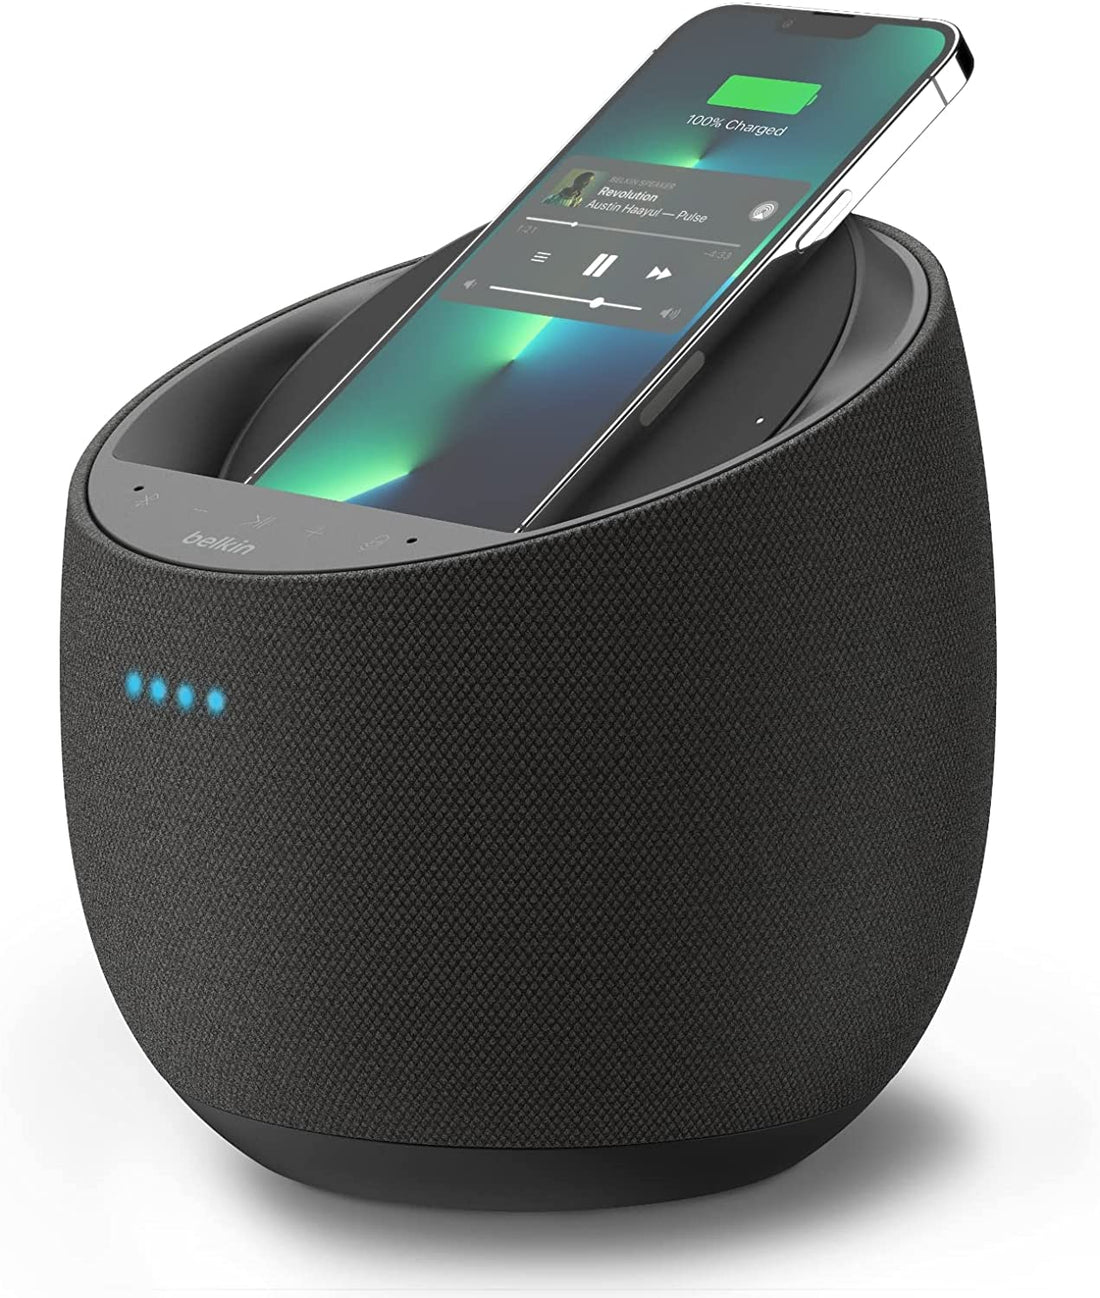 Belkin SoundForm Elite Smart Speaker + Wireless Charger Google Assistant - Black (Certified Refurbished)